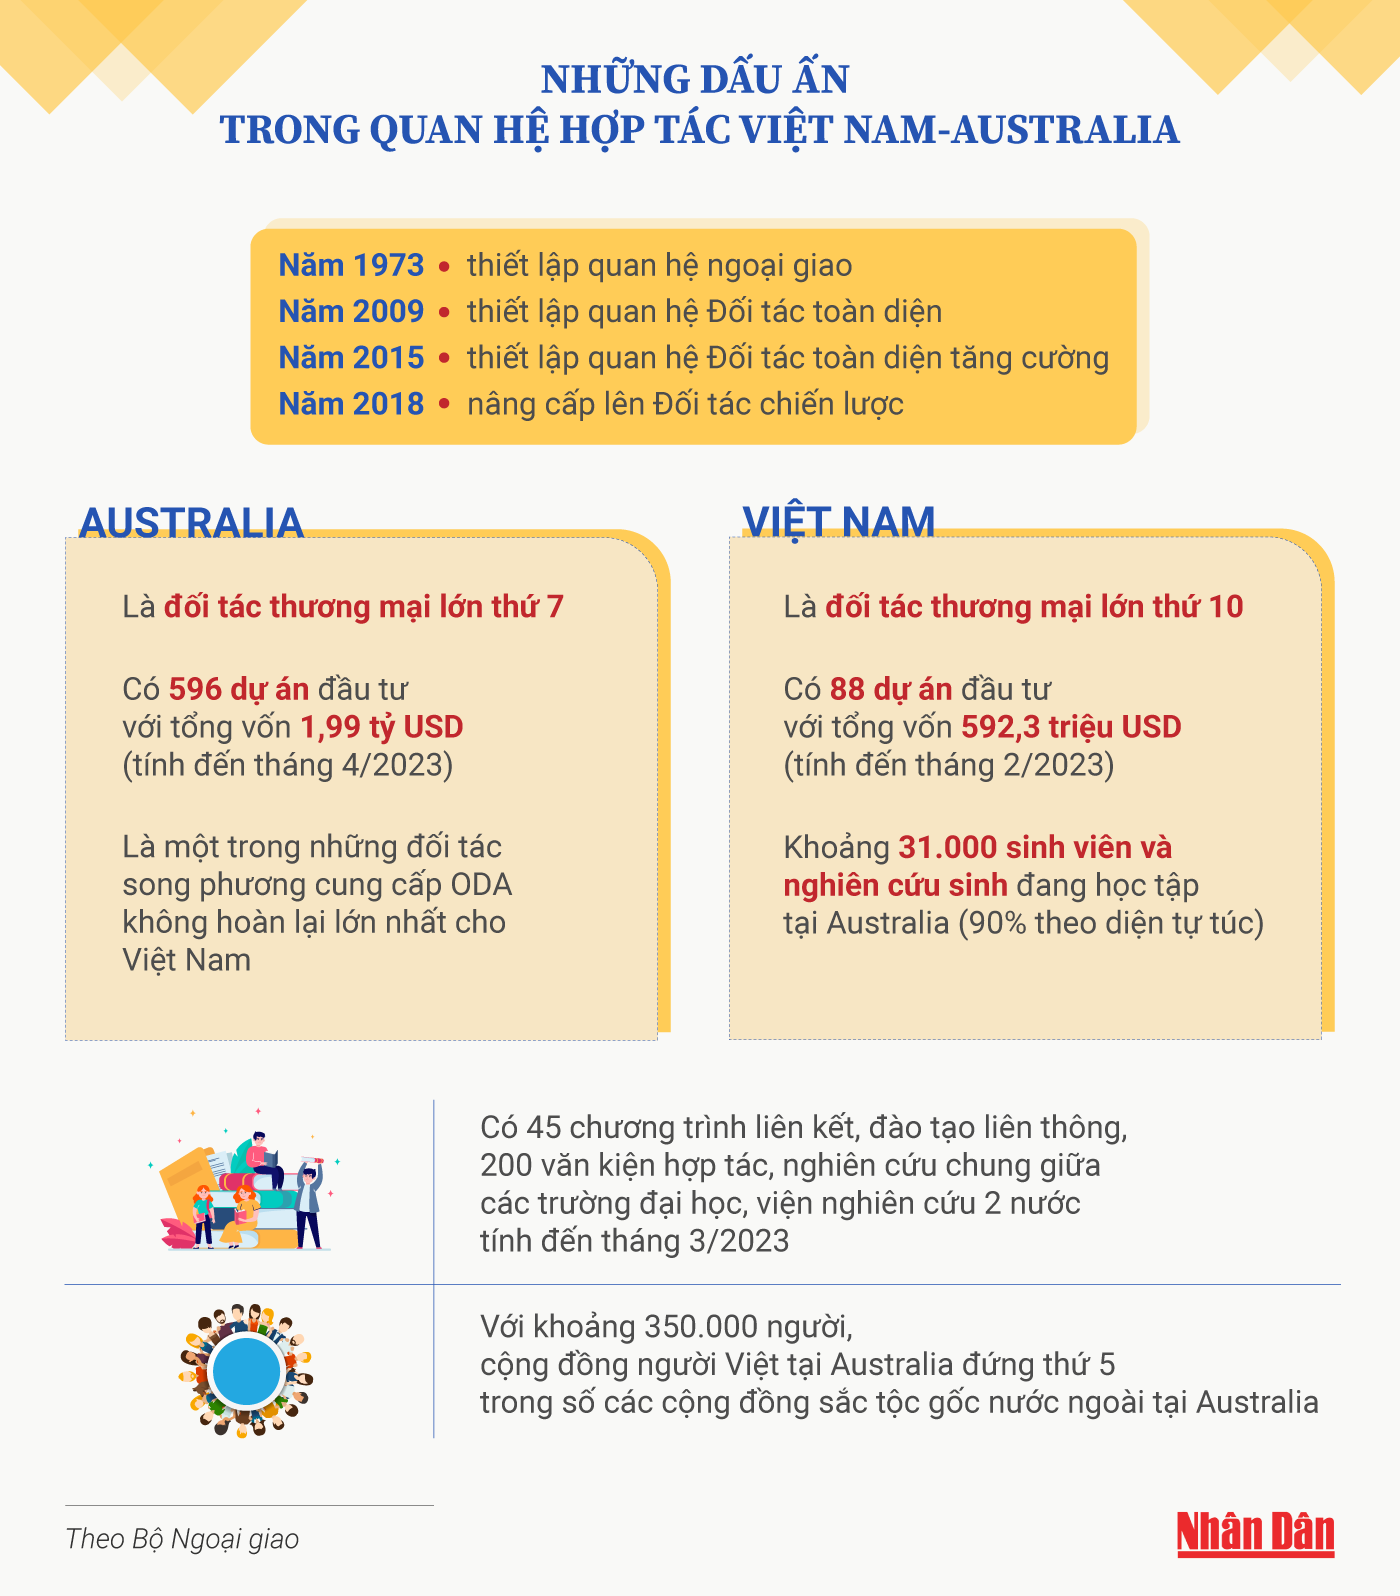 [Infographic] Những dấu ấn trong quan hệ hợp tác Việt Nam-Australia ảnh 1